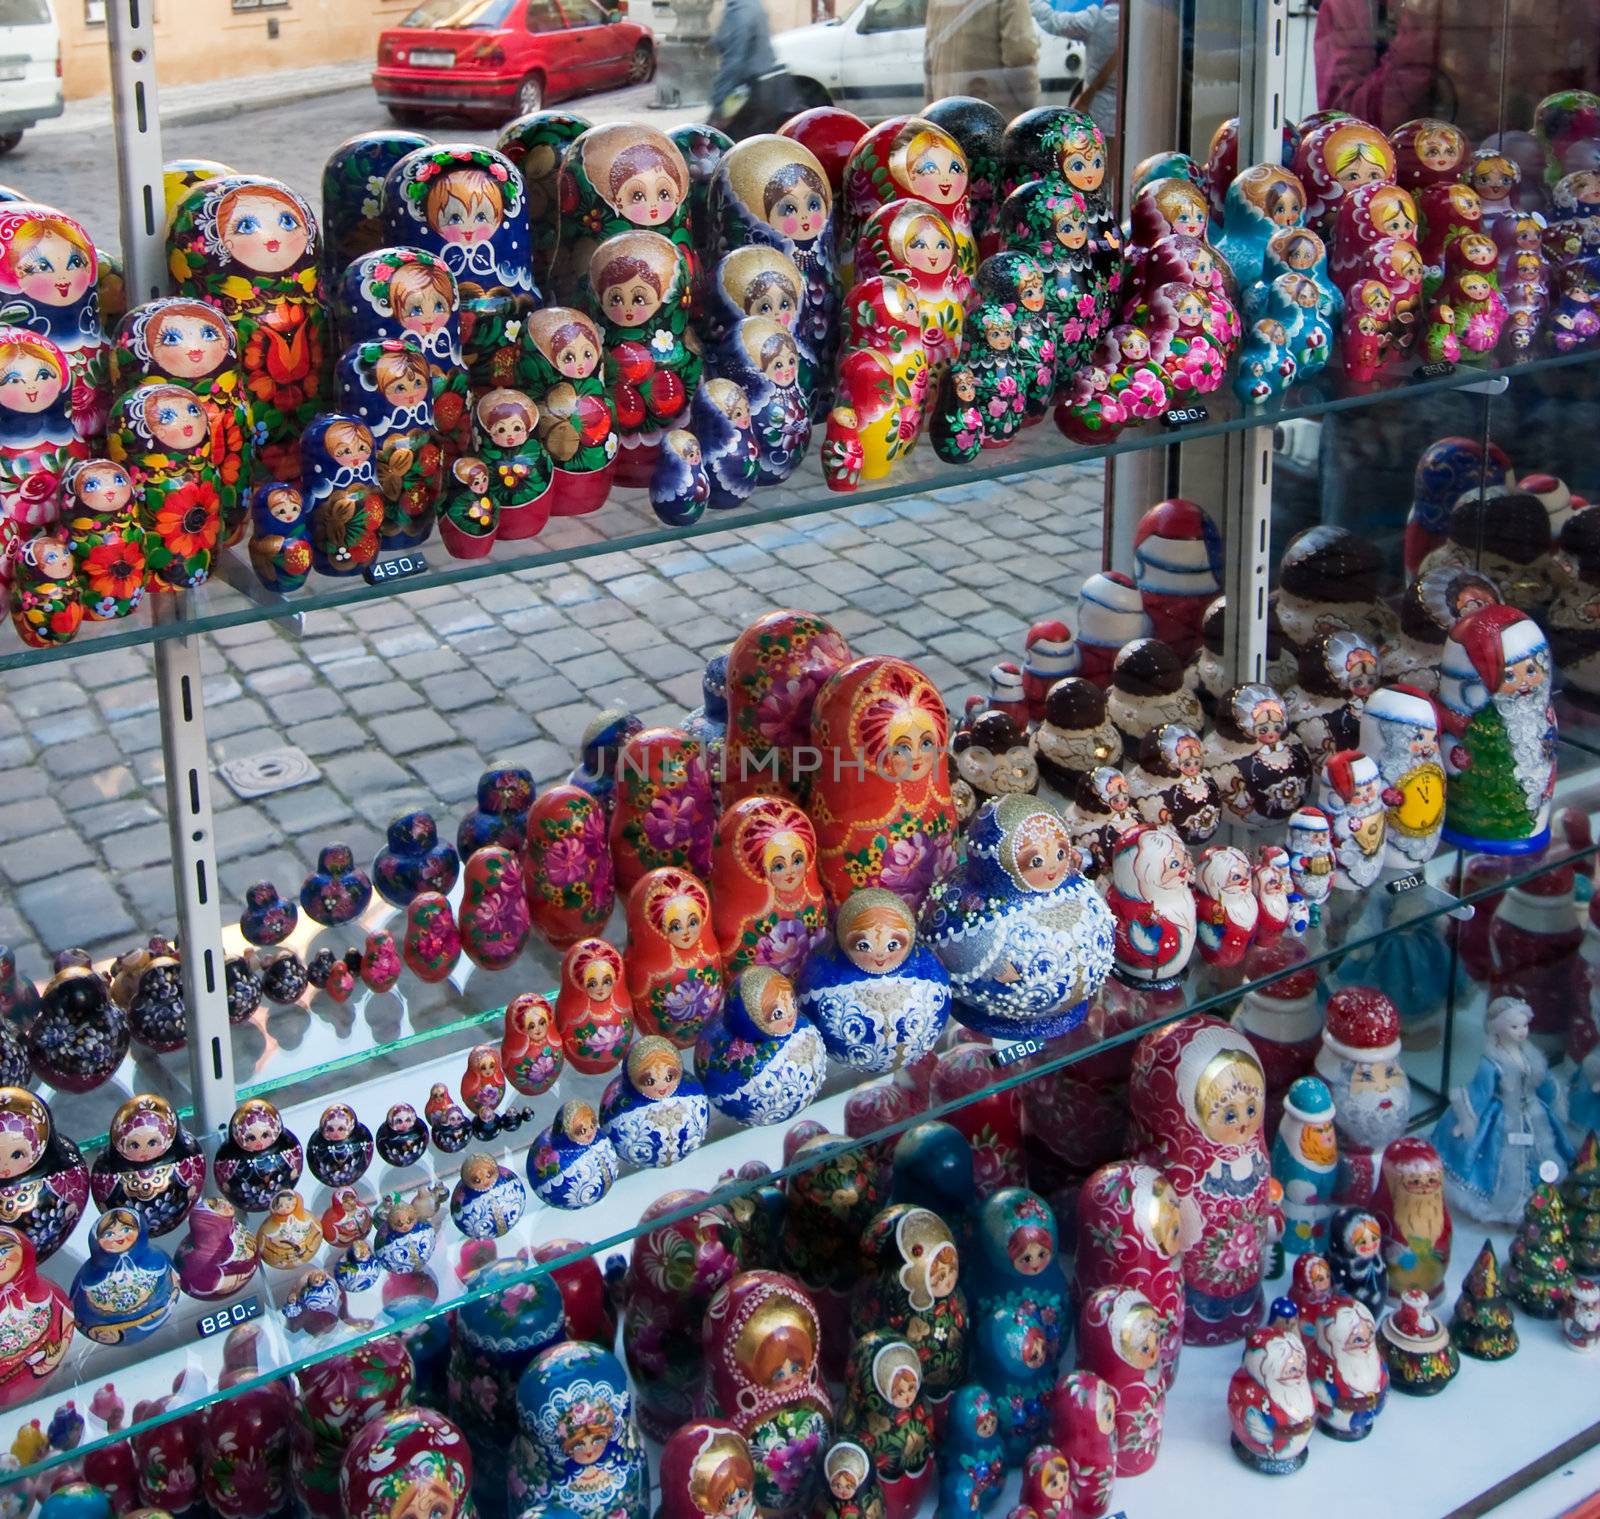 Russian nesting dolls in a store window.